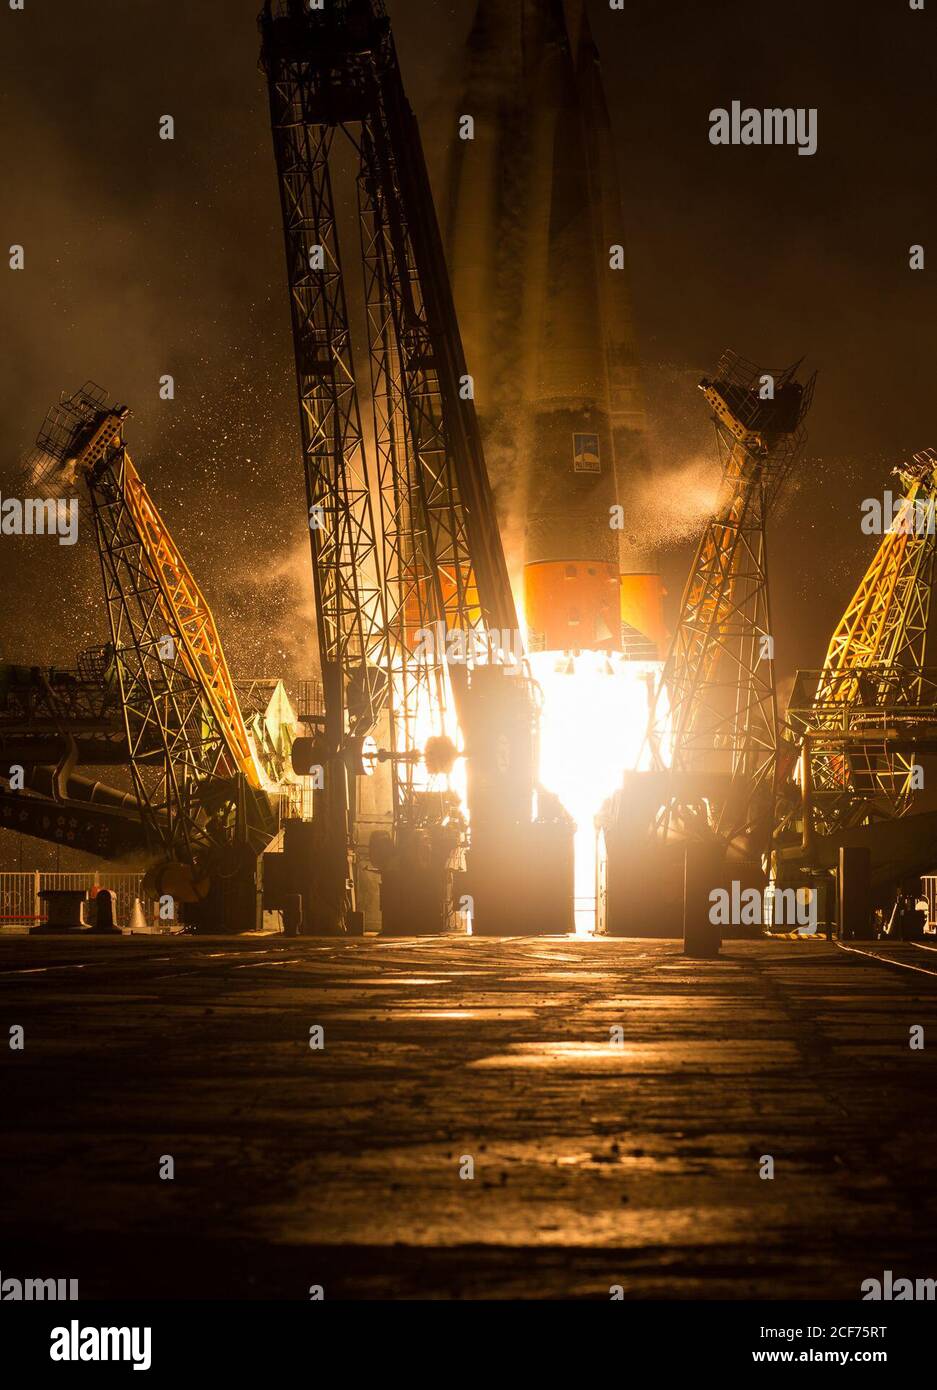 La fusée Soyouz TMA-20M est lancée à partir du cosmodrome de Baïkonour au Kazakhstan le samedi 19 mars 2016, transportant l'expédition 47 le commandant de Soyouz Alexey Ovchinin de Roscosmos, ingénieur de vol Jeff Williams de la NASA, Et l'ingénieur de vol Oleg Skripochka de Roscosmos en orbite pour commencer leur mission de cinq mois et demi sur la Station spatiale internationale. (Photo : NASA/Aubrey Gemignani) Banque D'Images